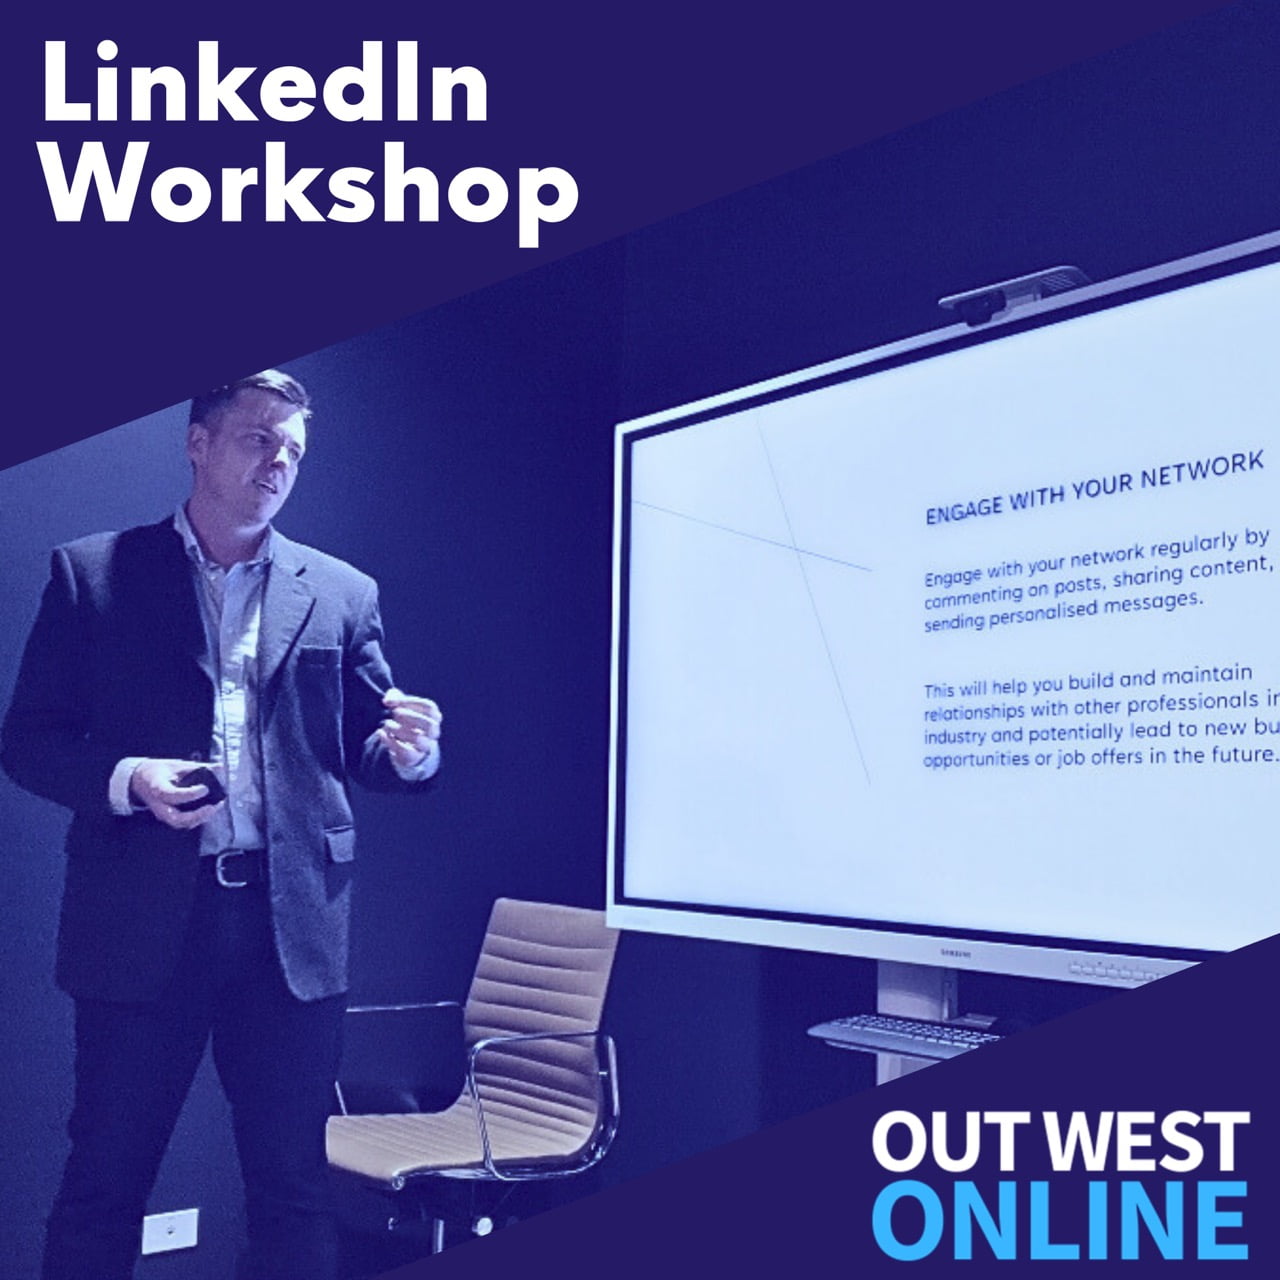 Out West Online LinkedIn Workshop